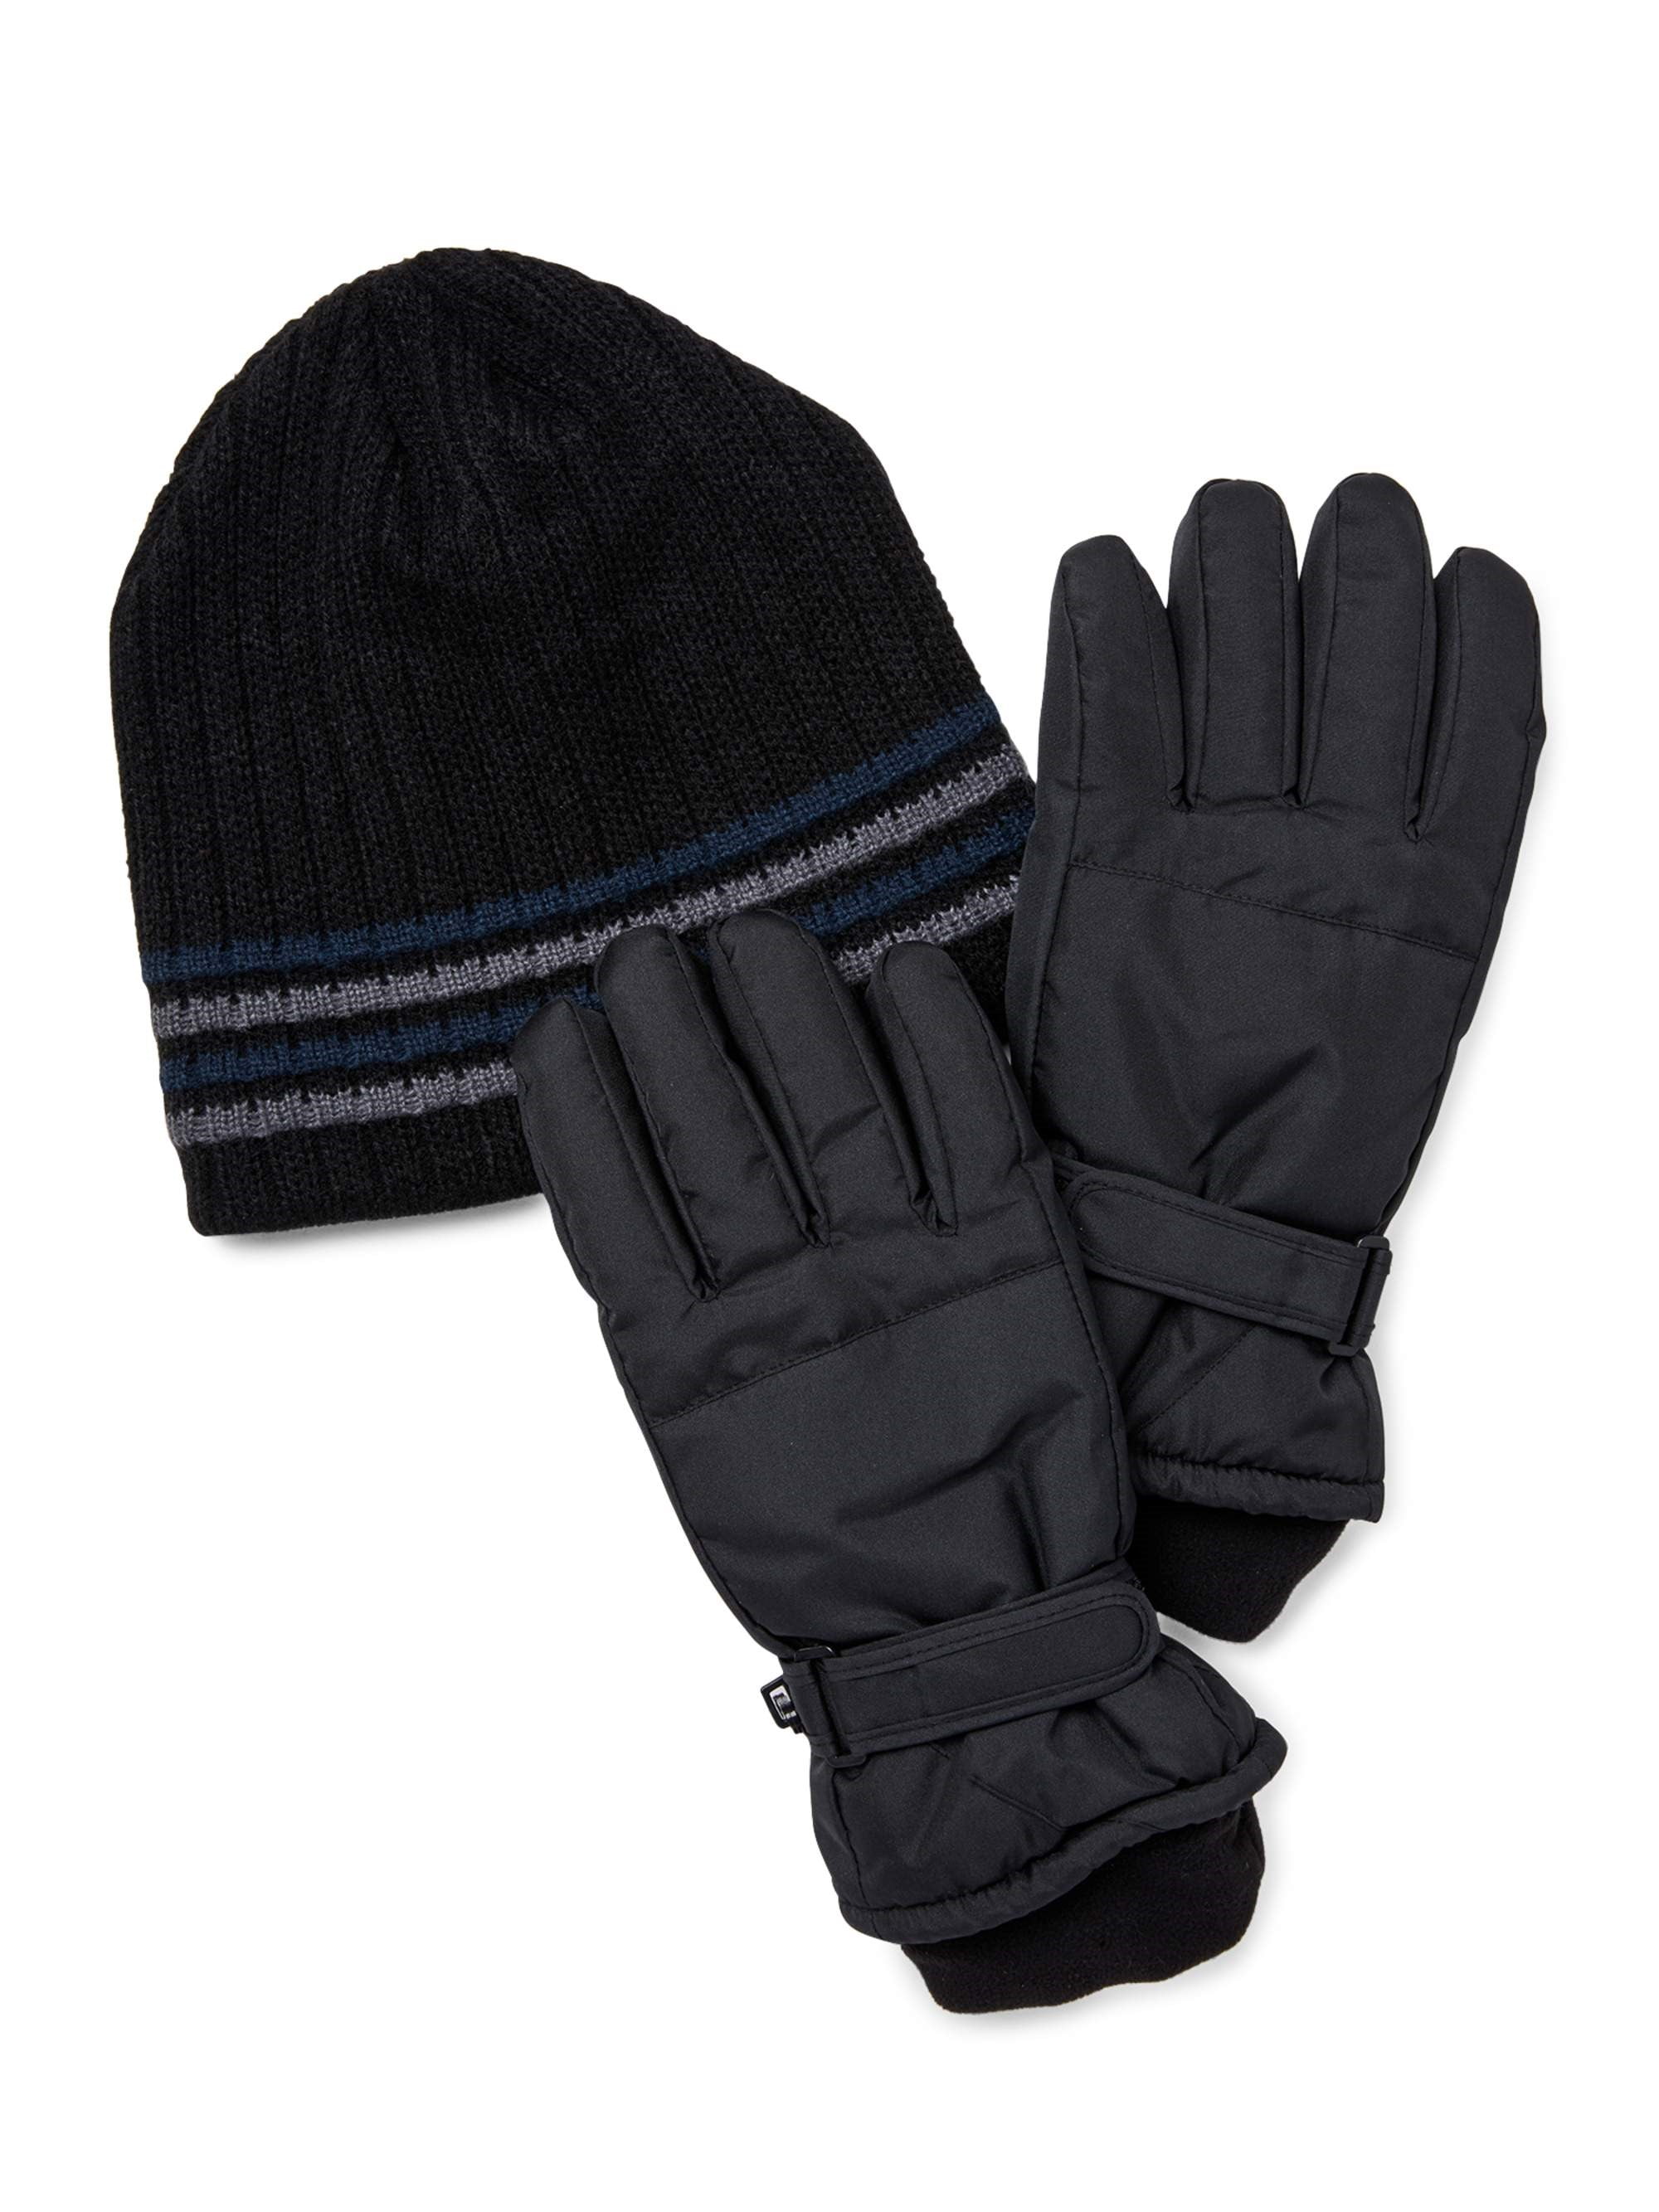 Isotoner Men's Ski Gloves and Hat, 2-Piece Set - Walmart.com